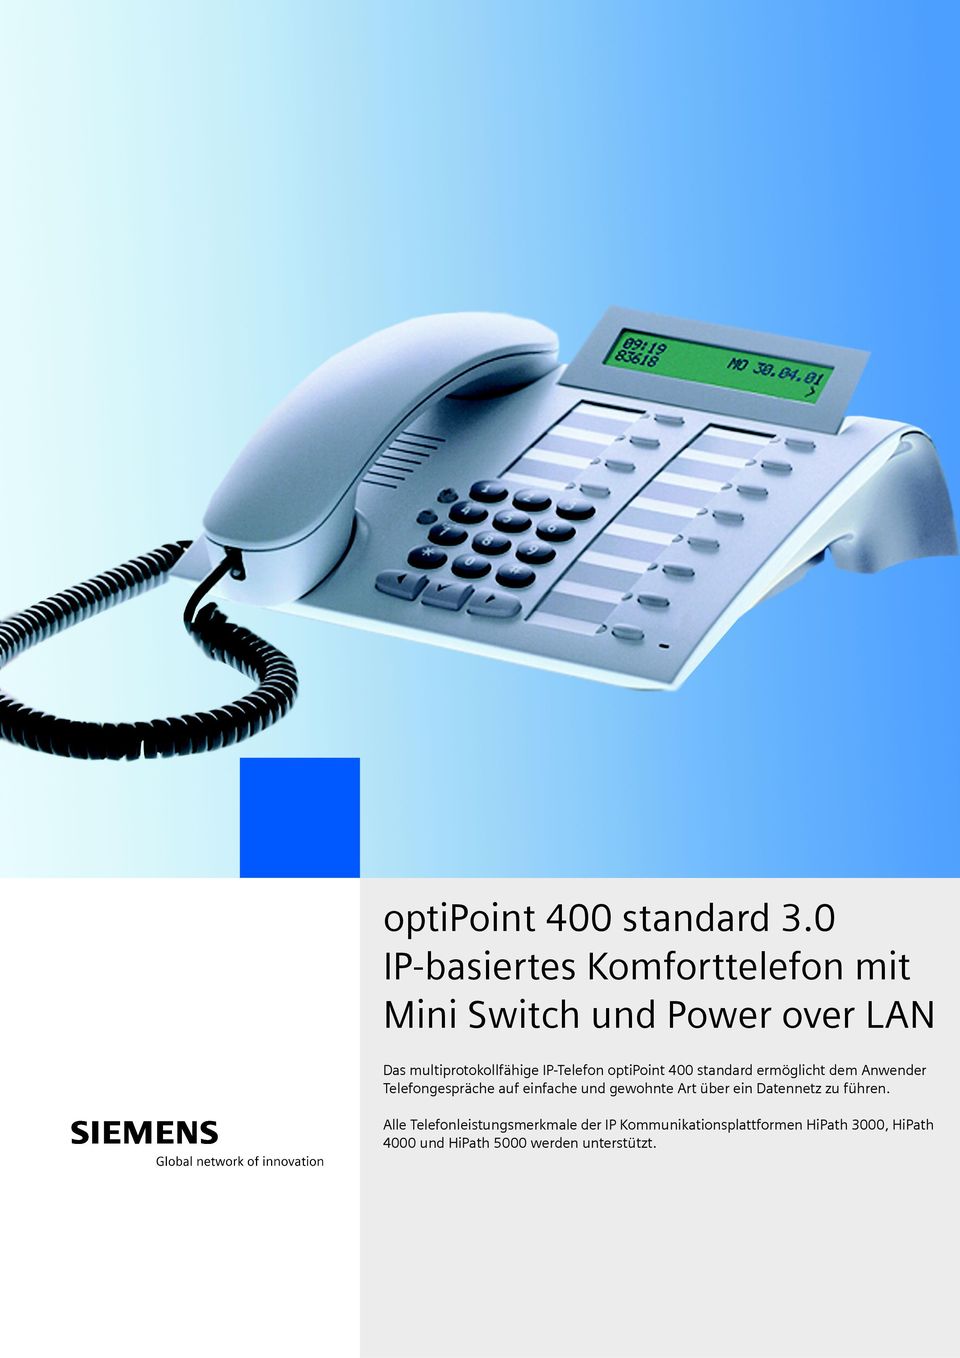 IP-Telefon optipoint 400 standard ermöglicht dem Anwender Telefongespräche auf einfache und